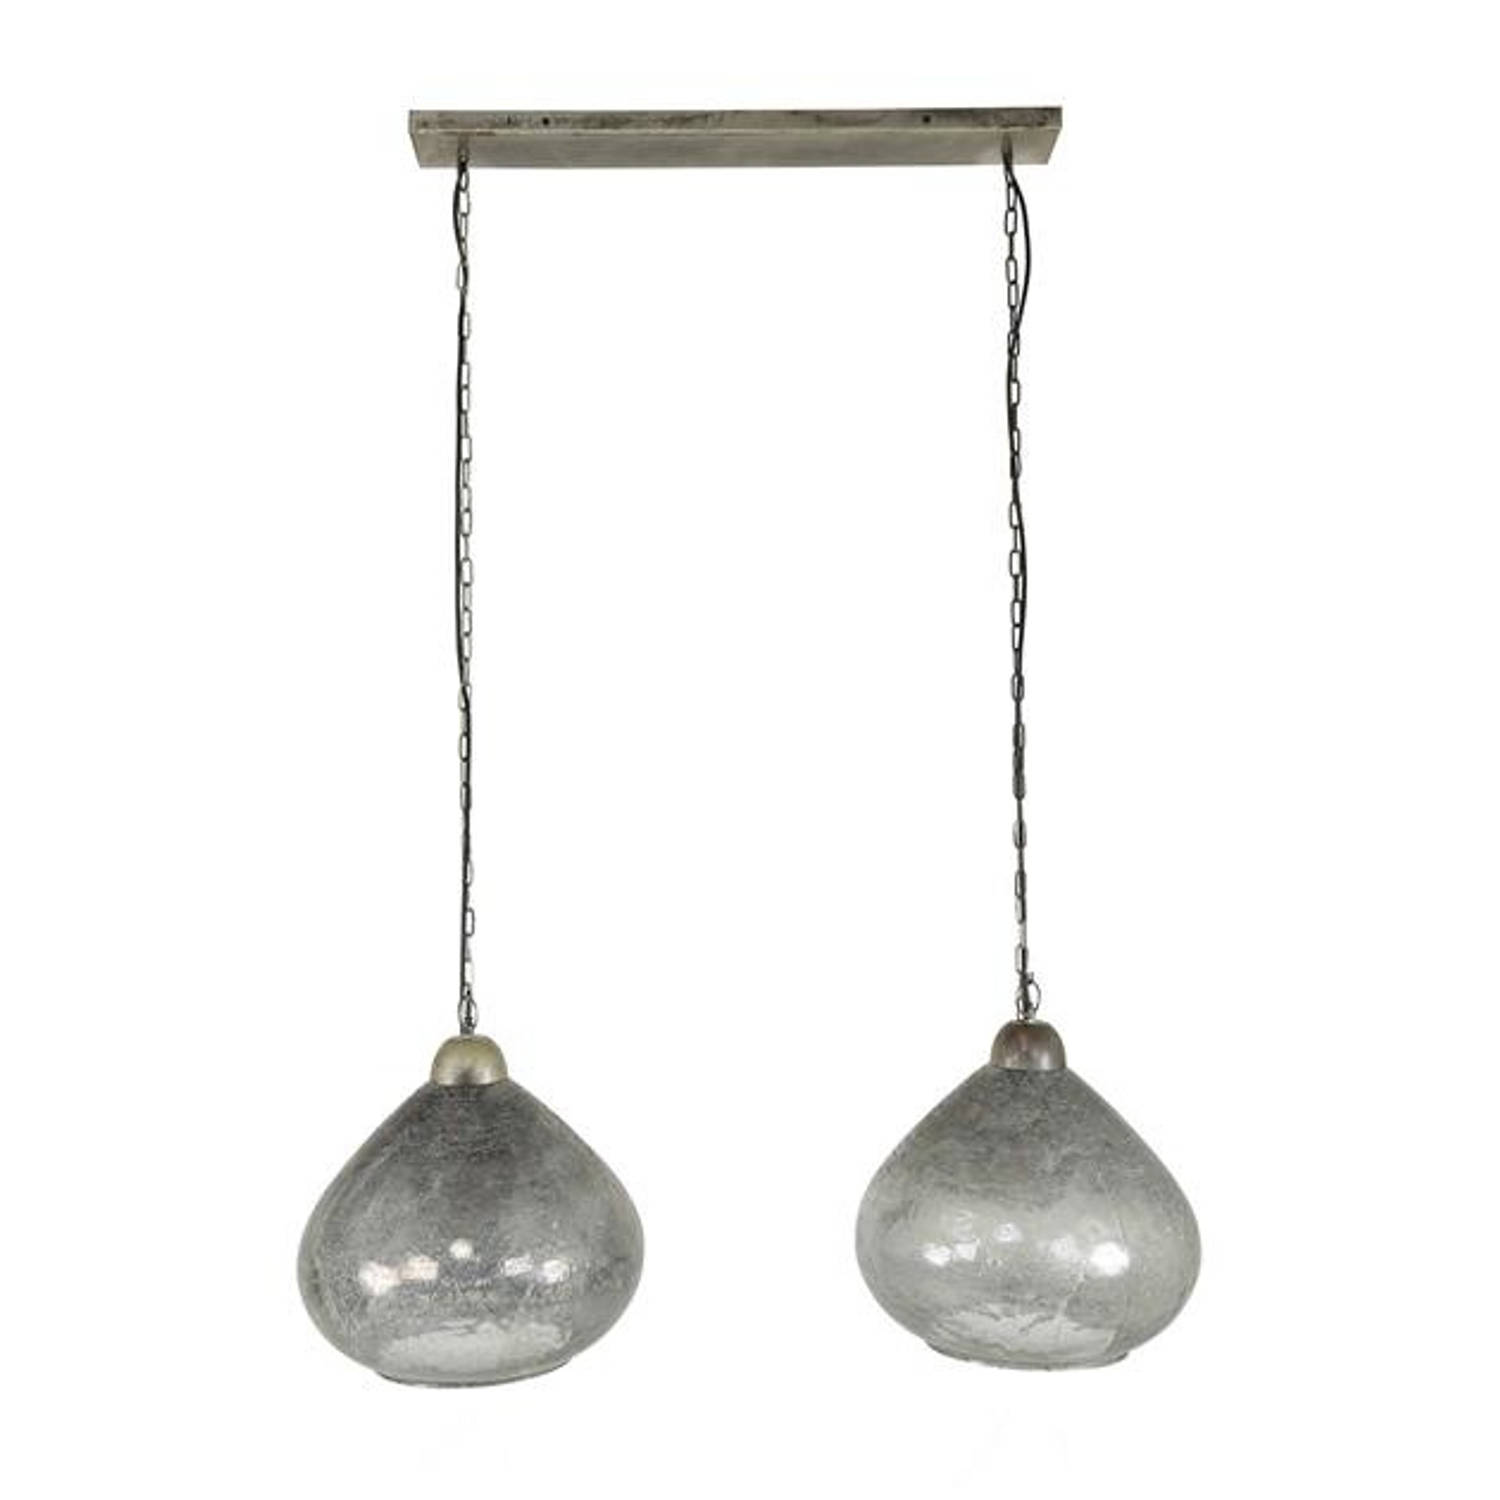 Hanglamp industrieel Bellamy 2-lichts oud zilver